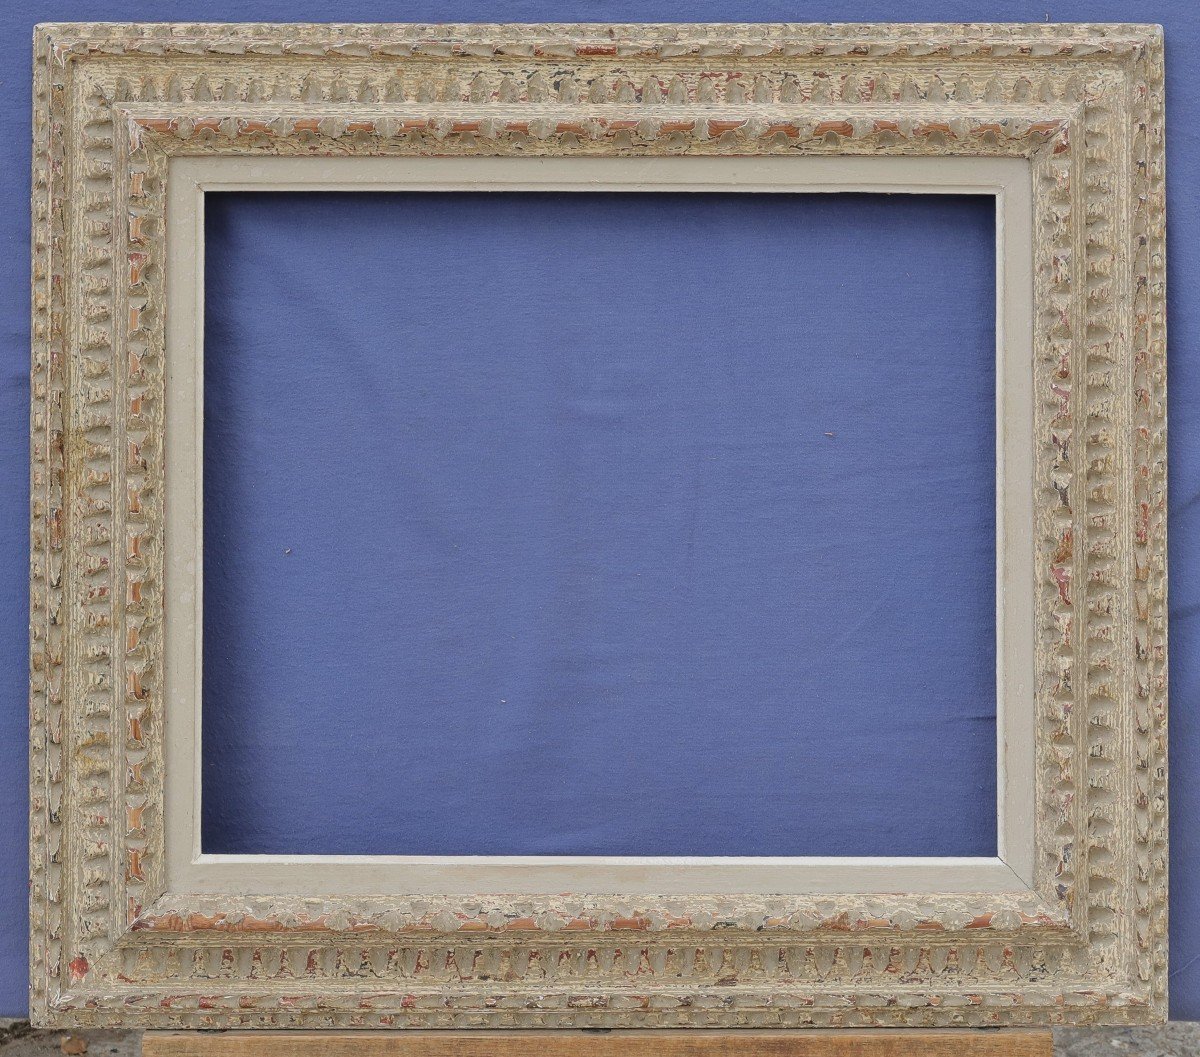 Montparnasse Frame For 10f Format: 55x46cm, View 54x45 Cm